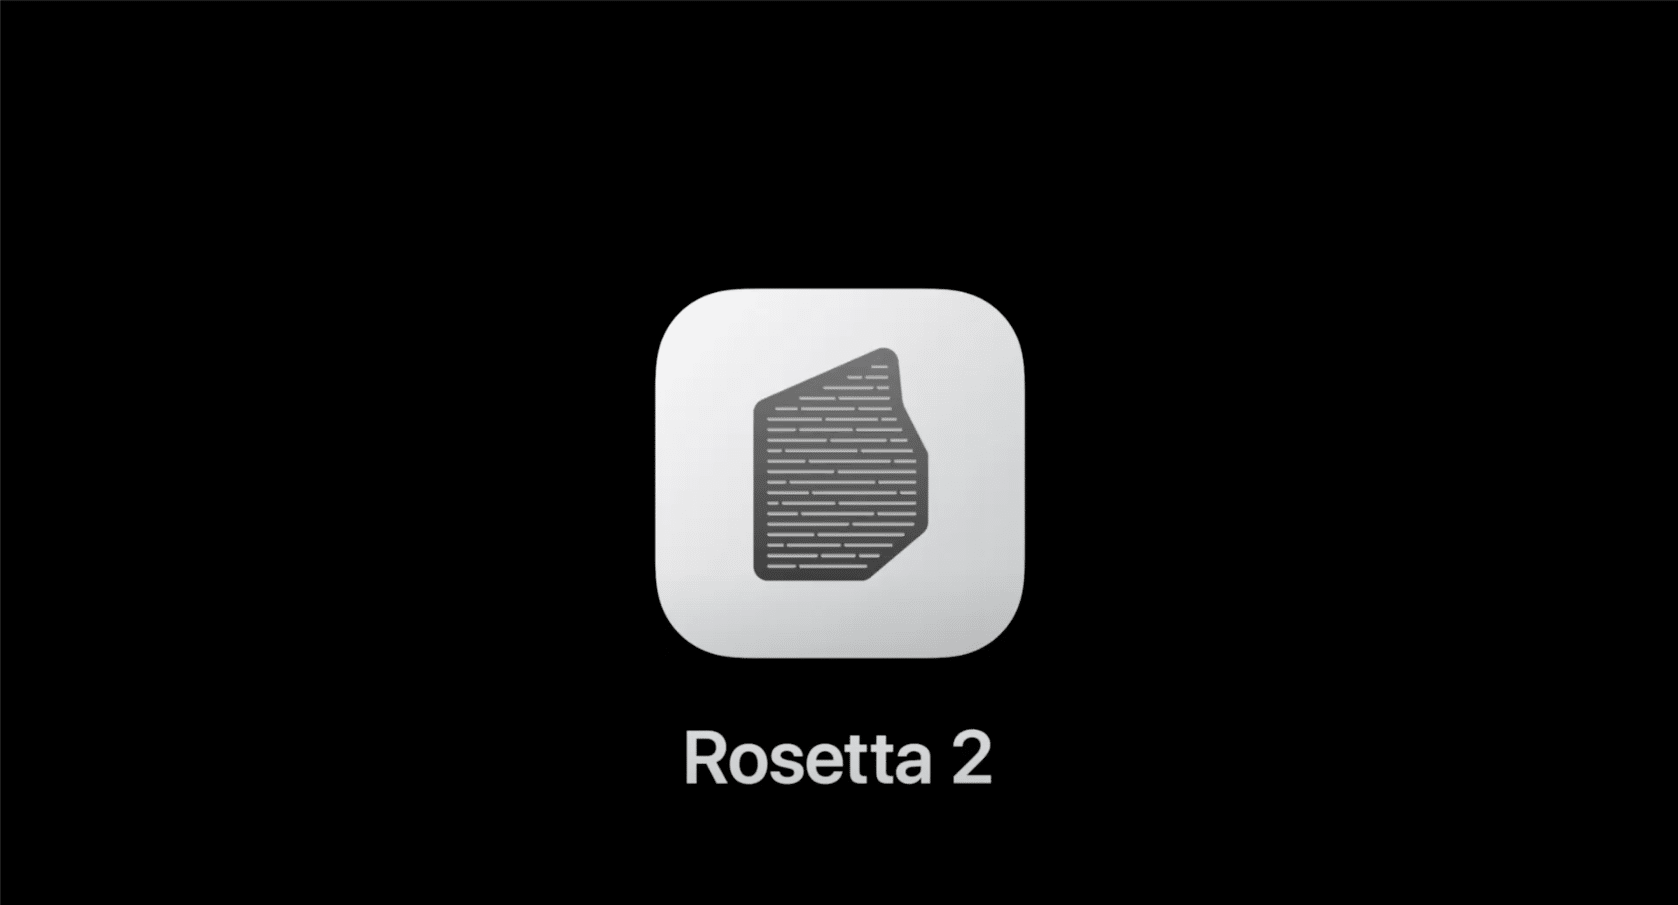 Rosetta 2 chính là chìa khoá của Apple để giúp quá trình chuyển sang ARM ít khó khăn hơn